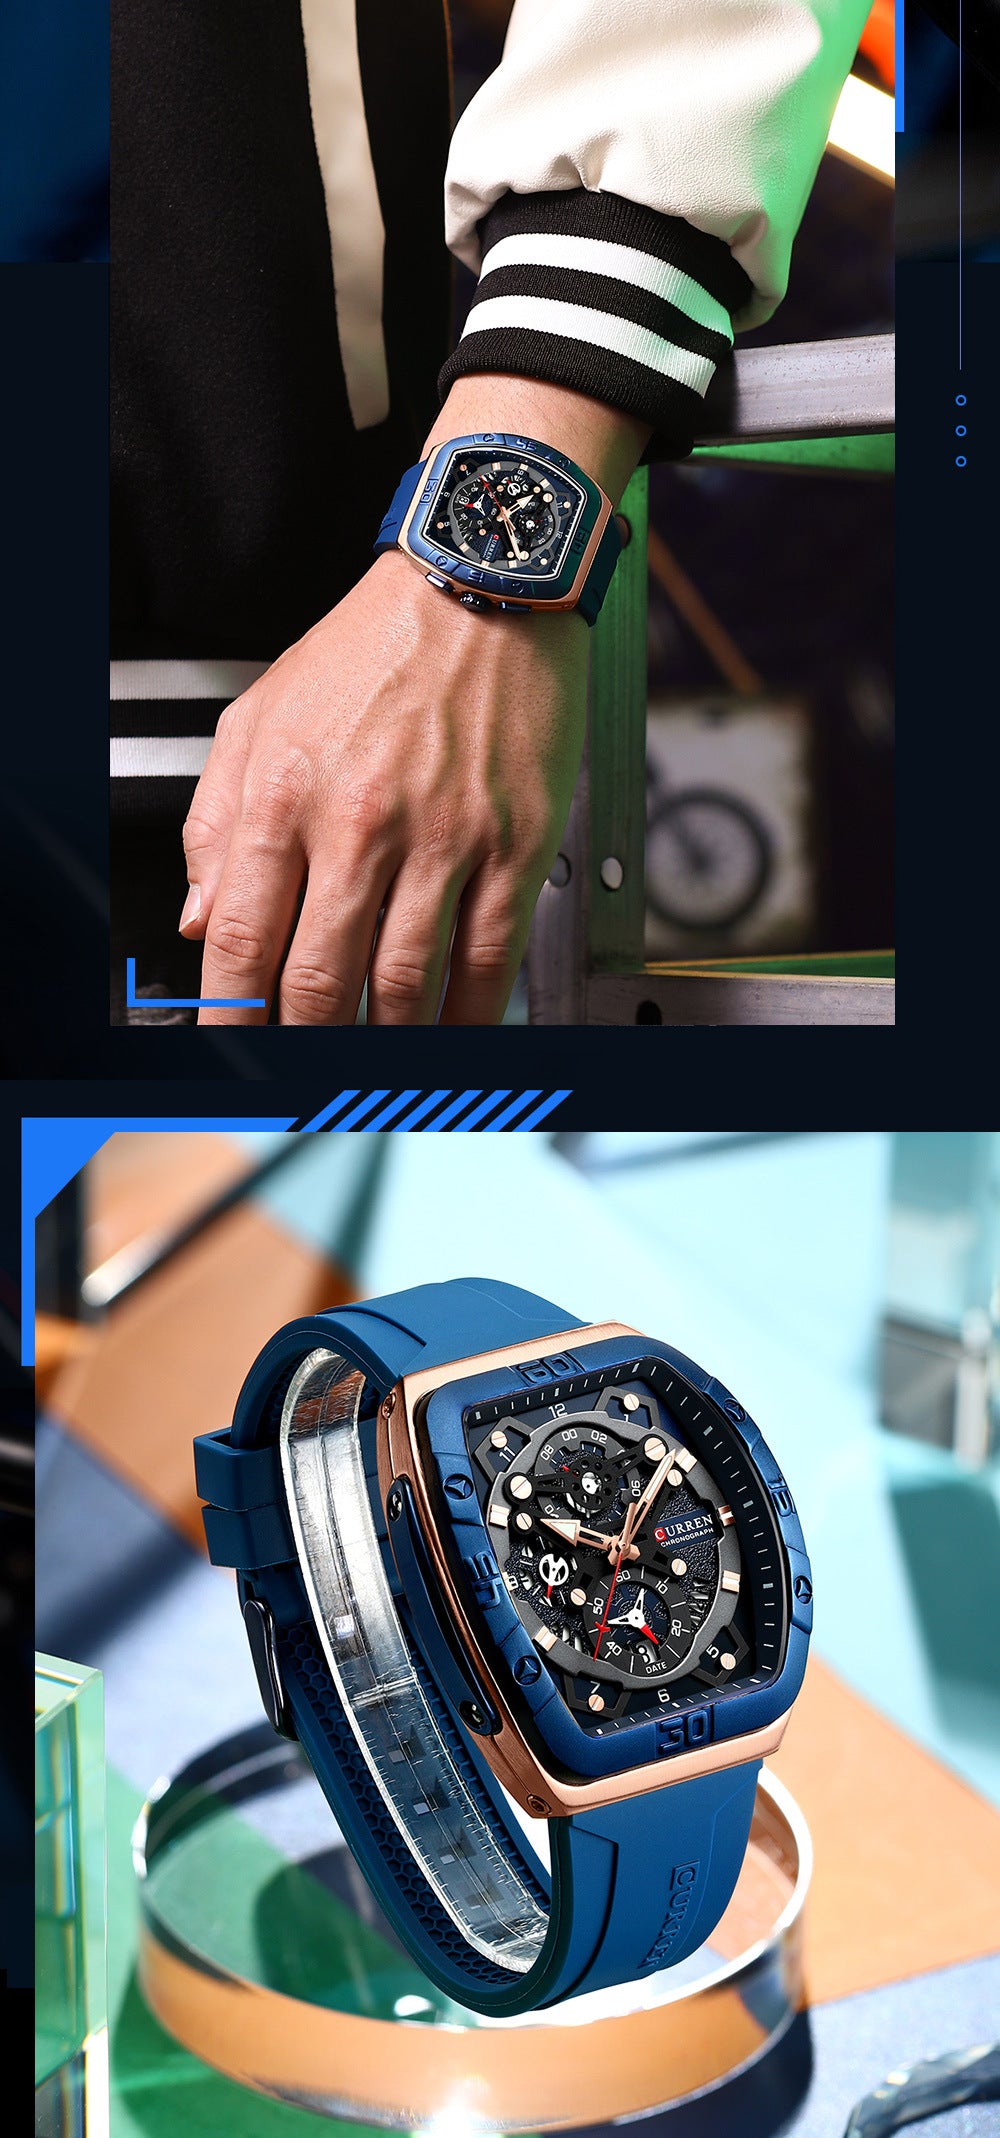 Curren 8443 Luxury Business Sports Wrist Watch Silicone StrapCurren 8443 Luxury Business Sports Wrist Watch Silicone Strap